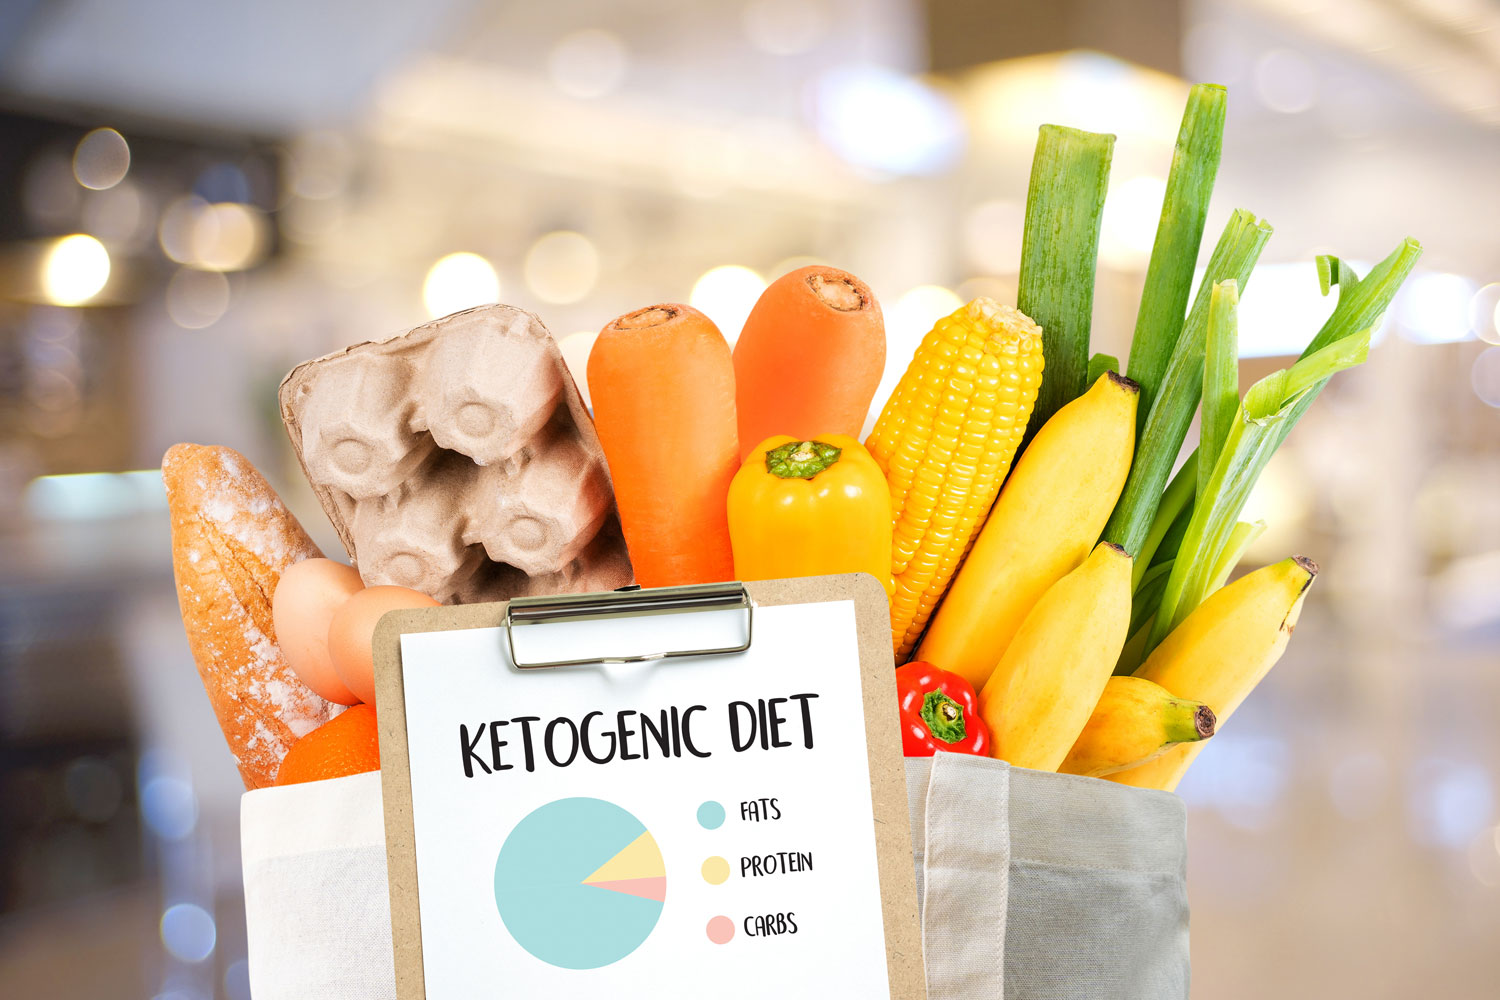 Kiến thức cơ bản dành cho người mới bắt đầu tìm hiểu về Keto diet.